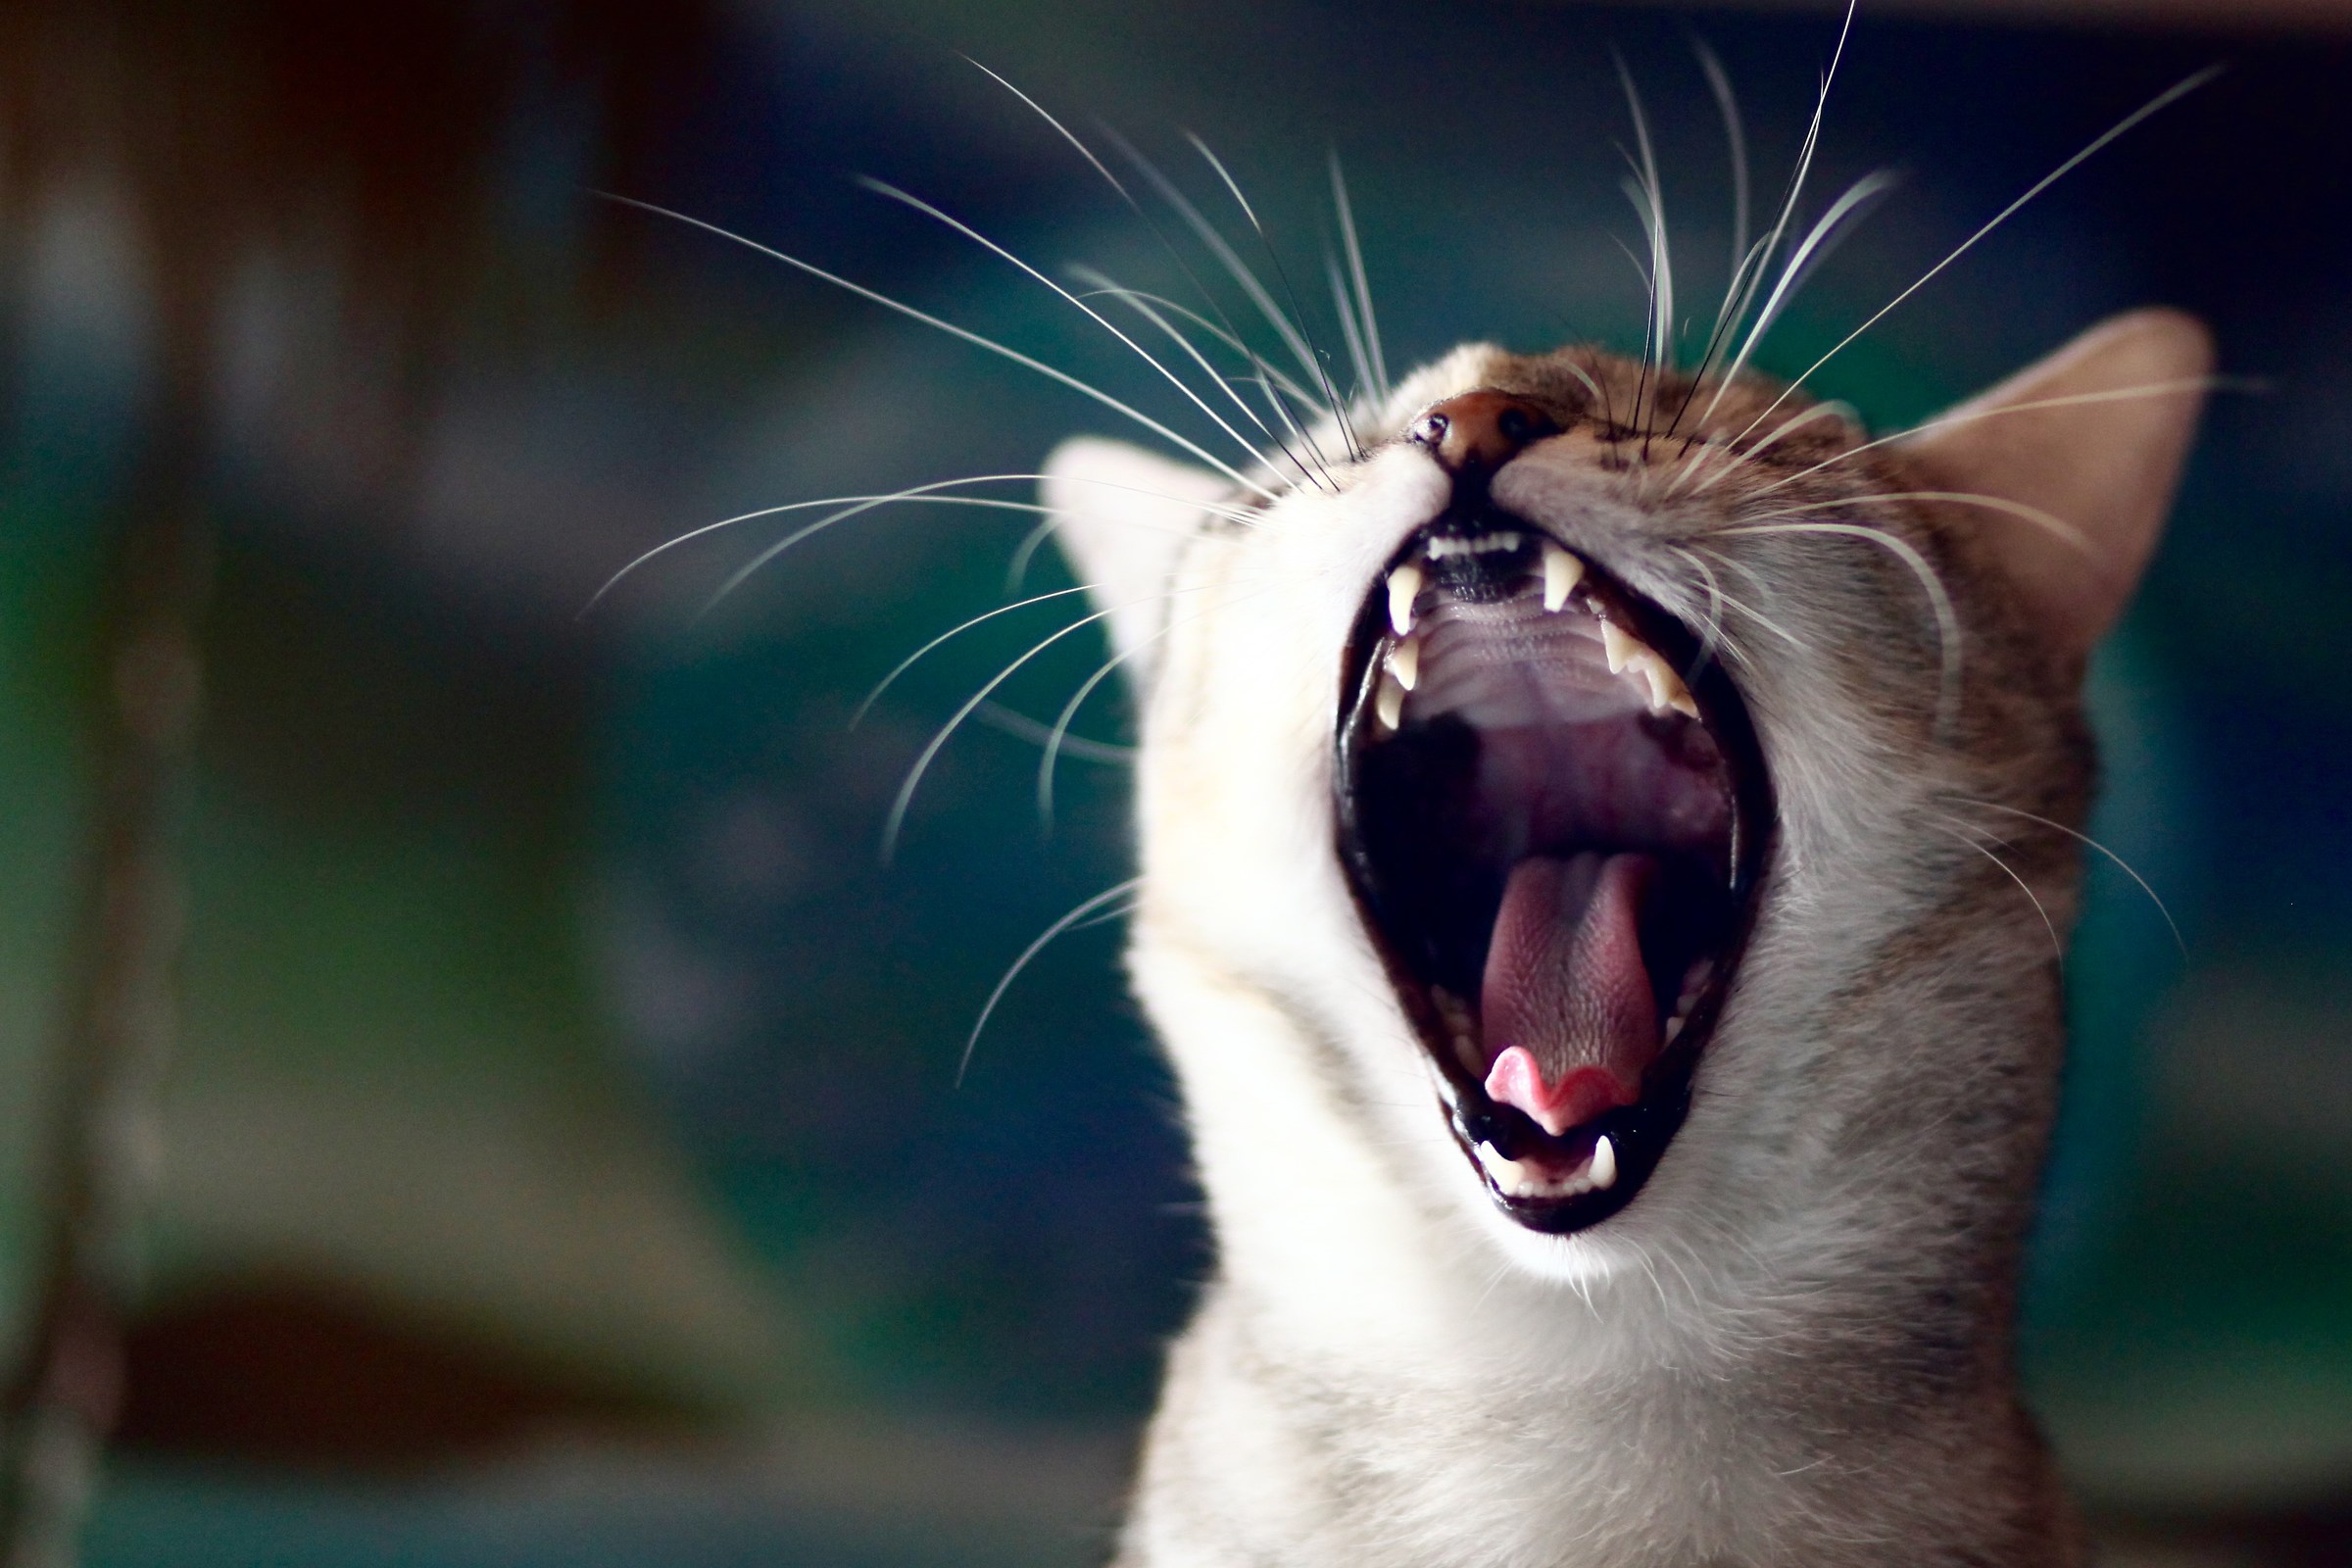 The feline roar!...